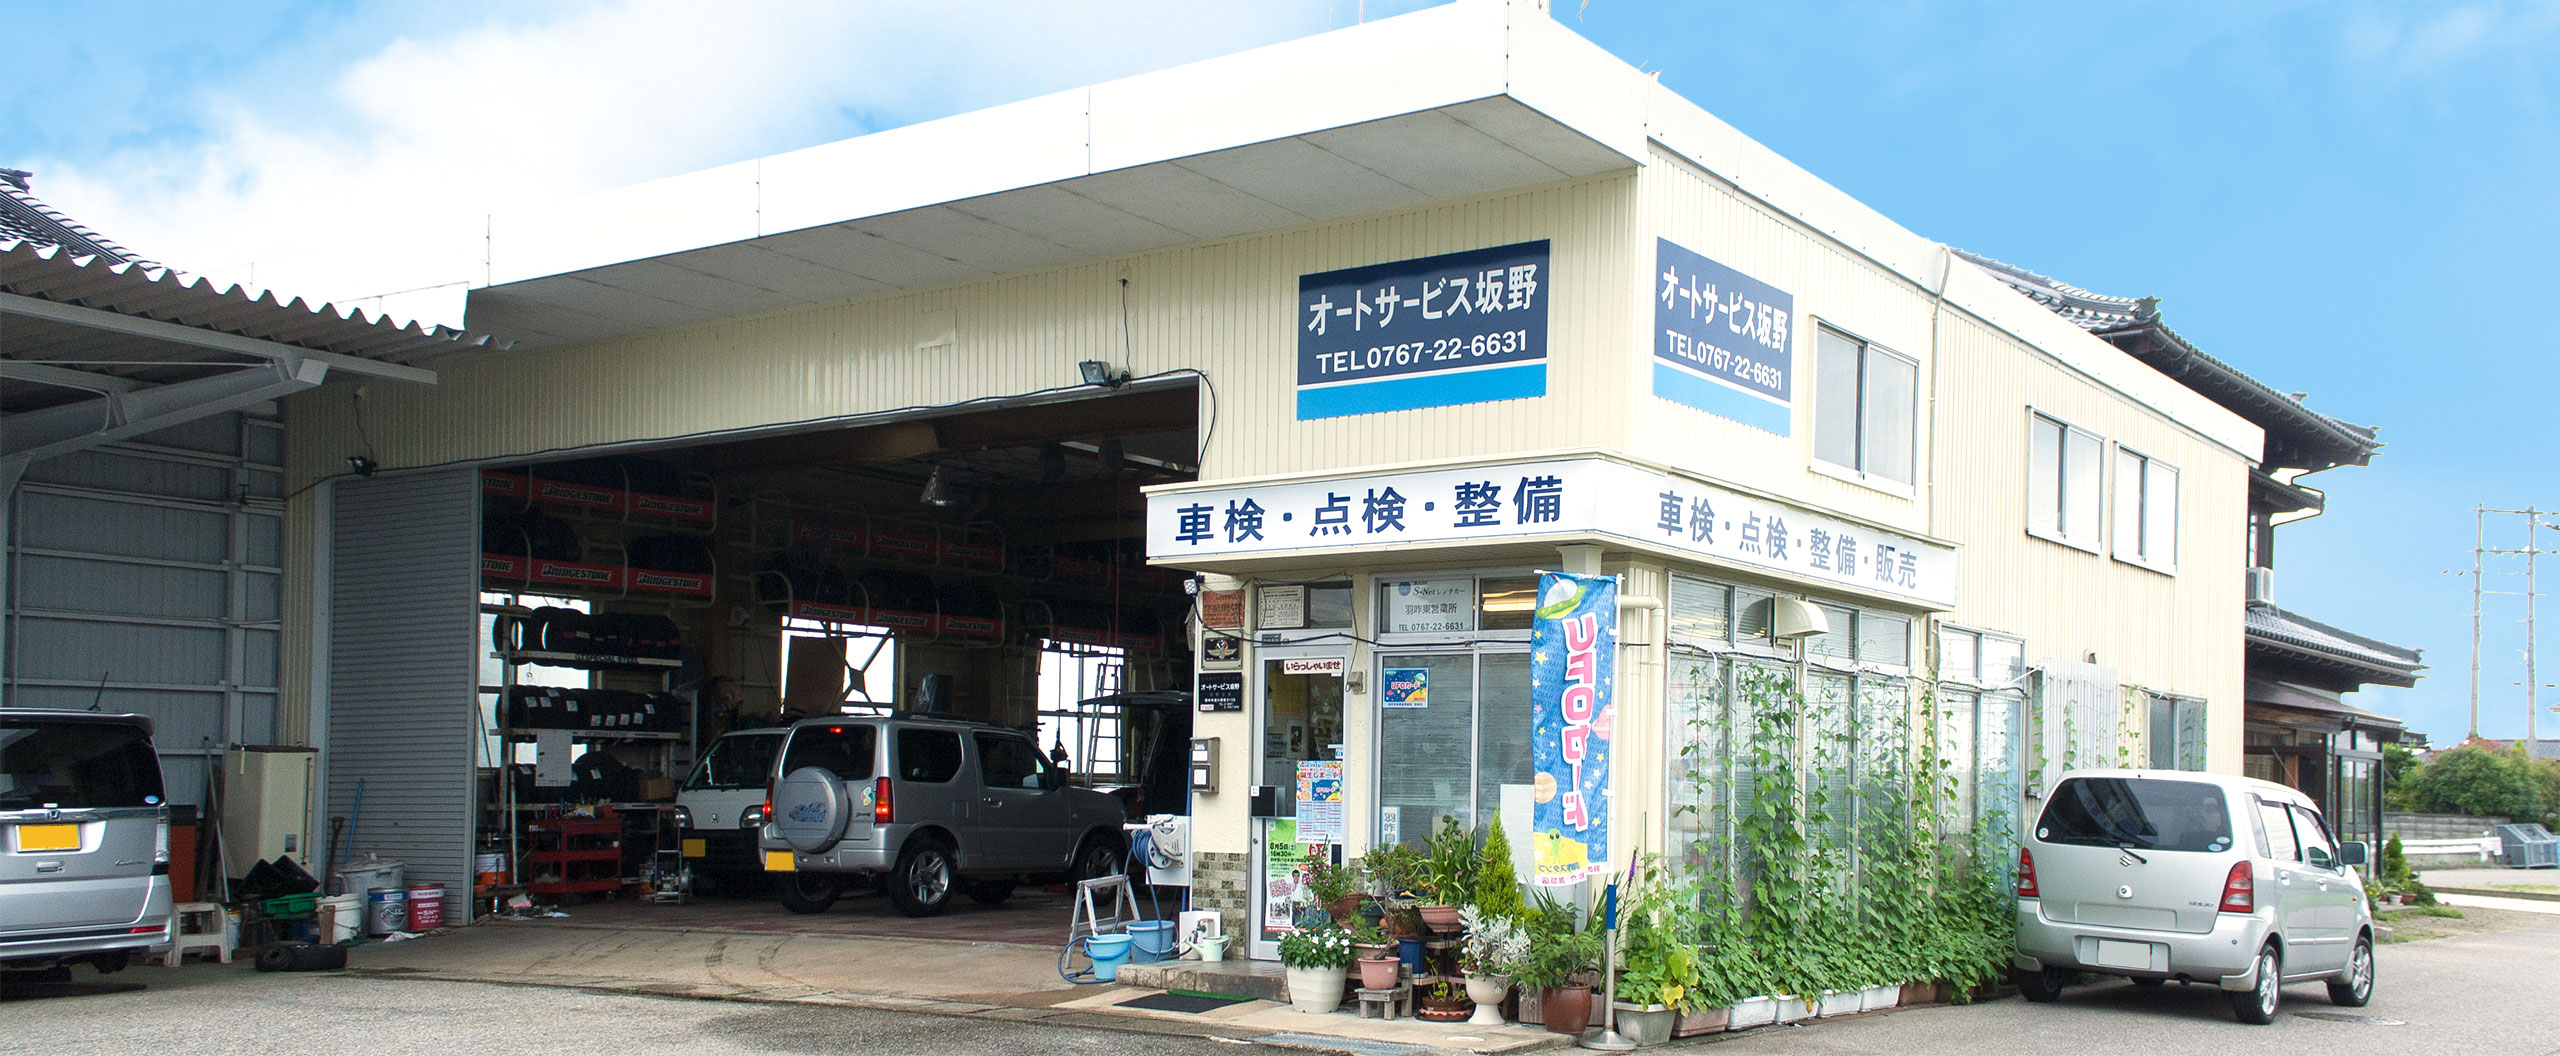 石川県羽咋市で車の整備・点検等を行っております。お気軽にお越しください。